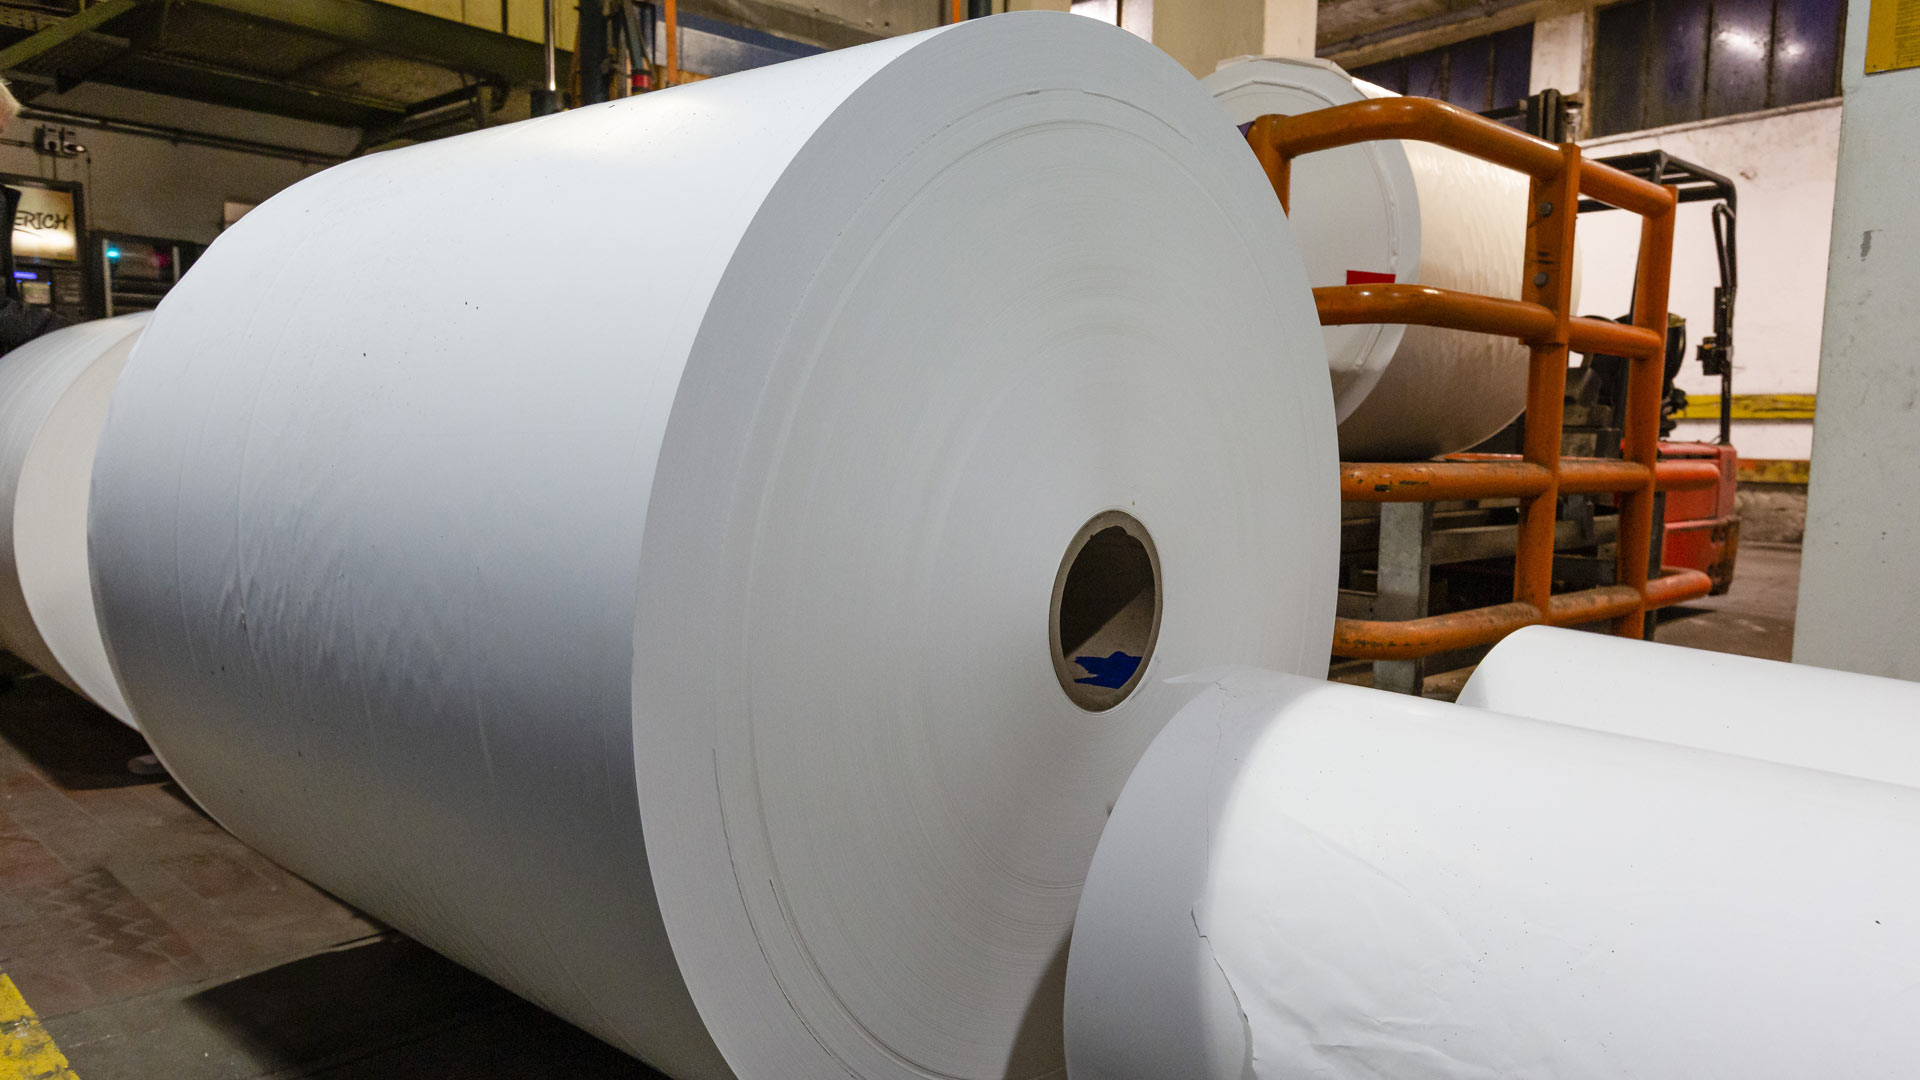 Papier liegt auf großen Rollen in der Papierproduktionsfabrik Mitsubishi Hitec Paper. | picture alliance/dpa